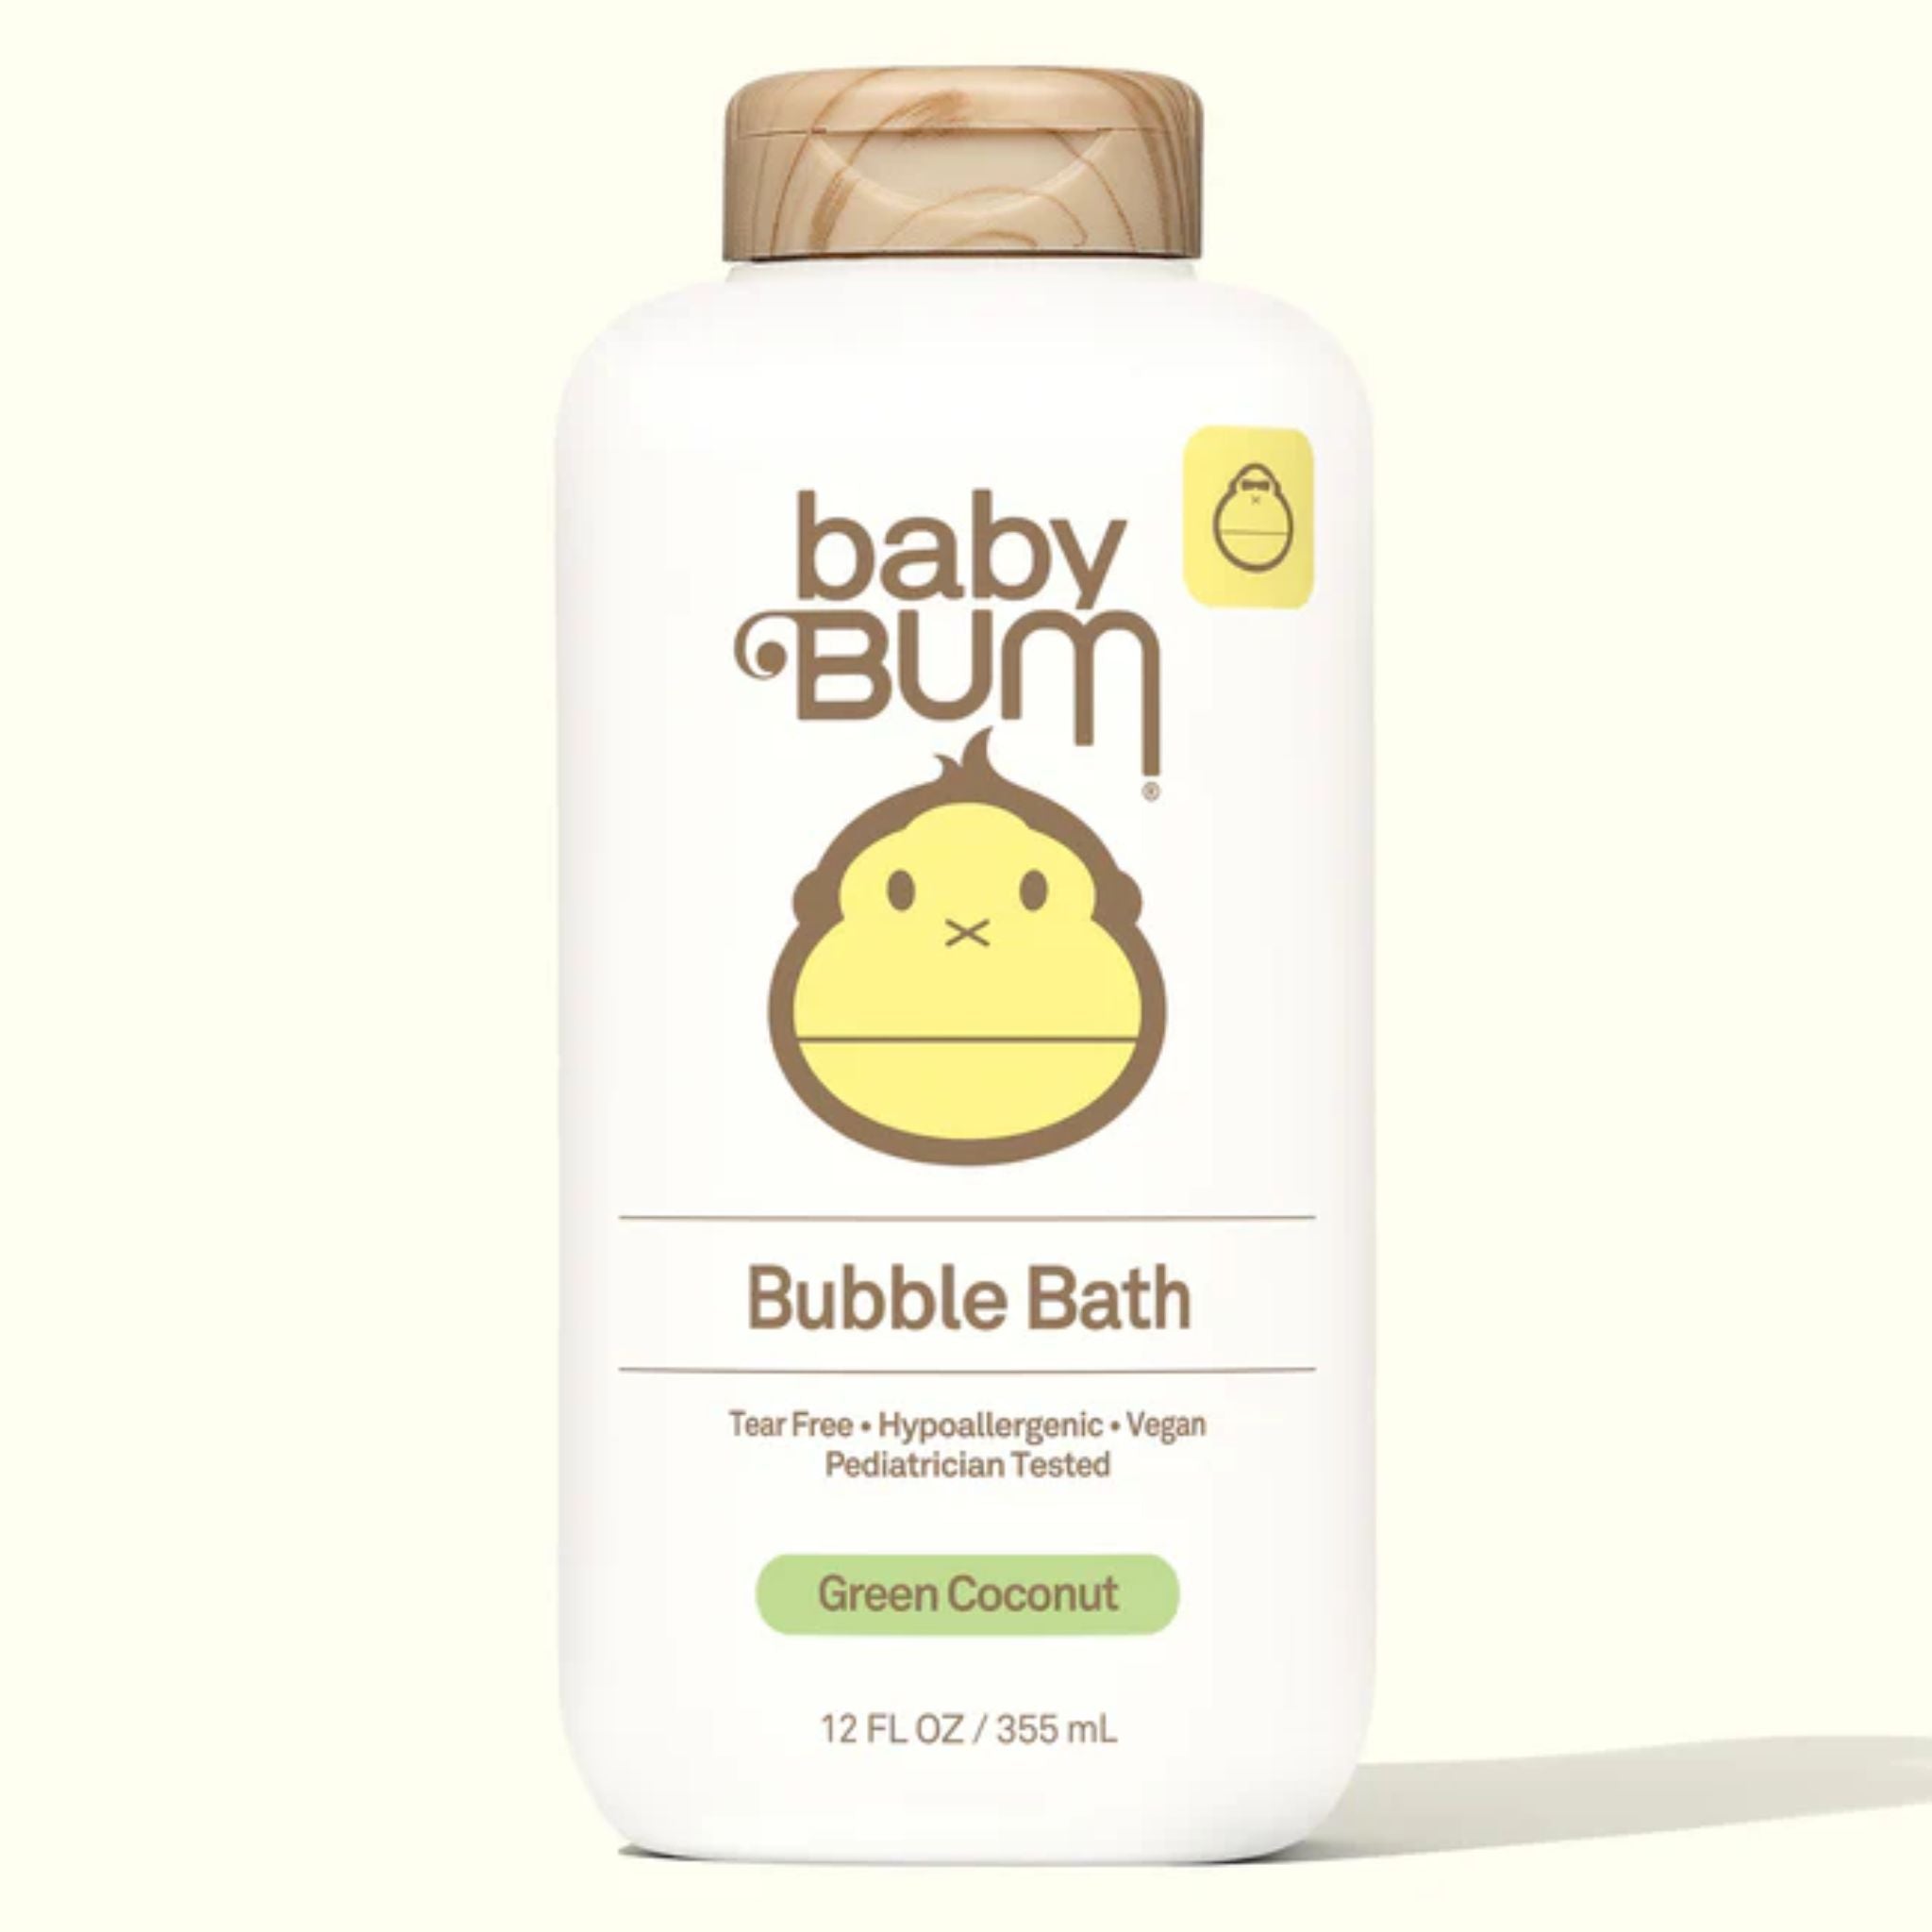 mousse-de-bain-baby-bum, BUBBLE BATH, SUN BUM, DM2 SHOP, 01